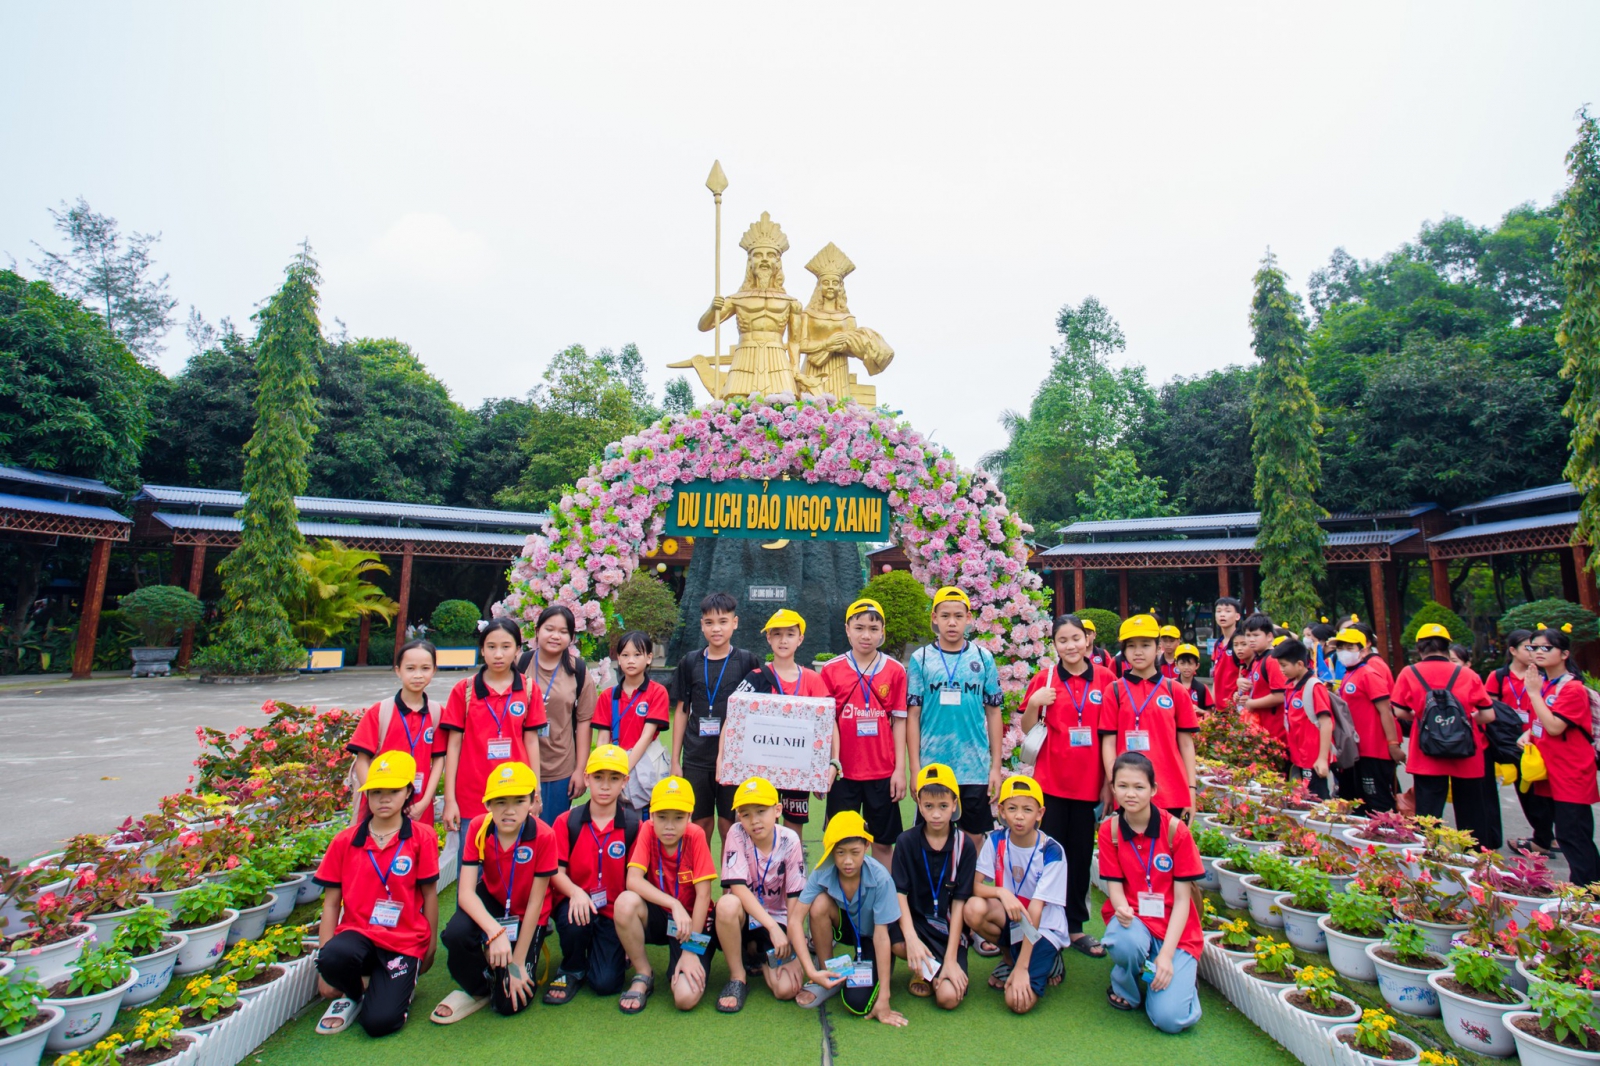 Hoạt động vui chơi dành cho thầy cô, phụ huynh và các em học sinh tại khu du lịch Đảo Ngọc Xanh.